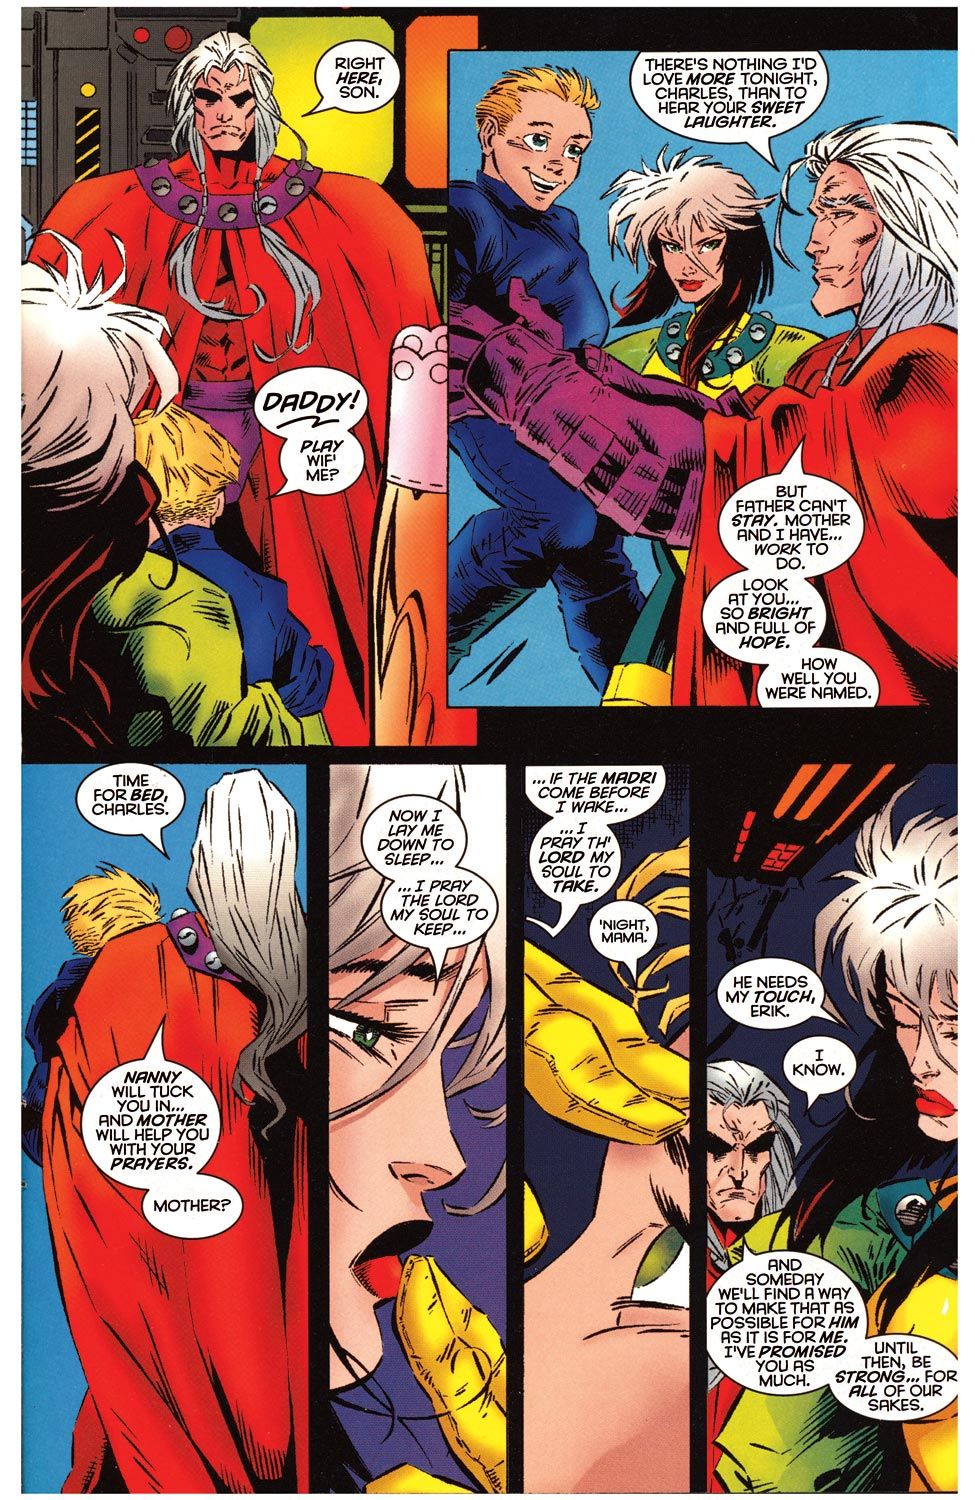 Когда они установили, что Магнето может коснуться Роуга в комиксах о Людях Икс?